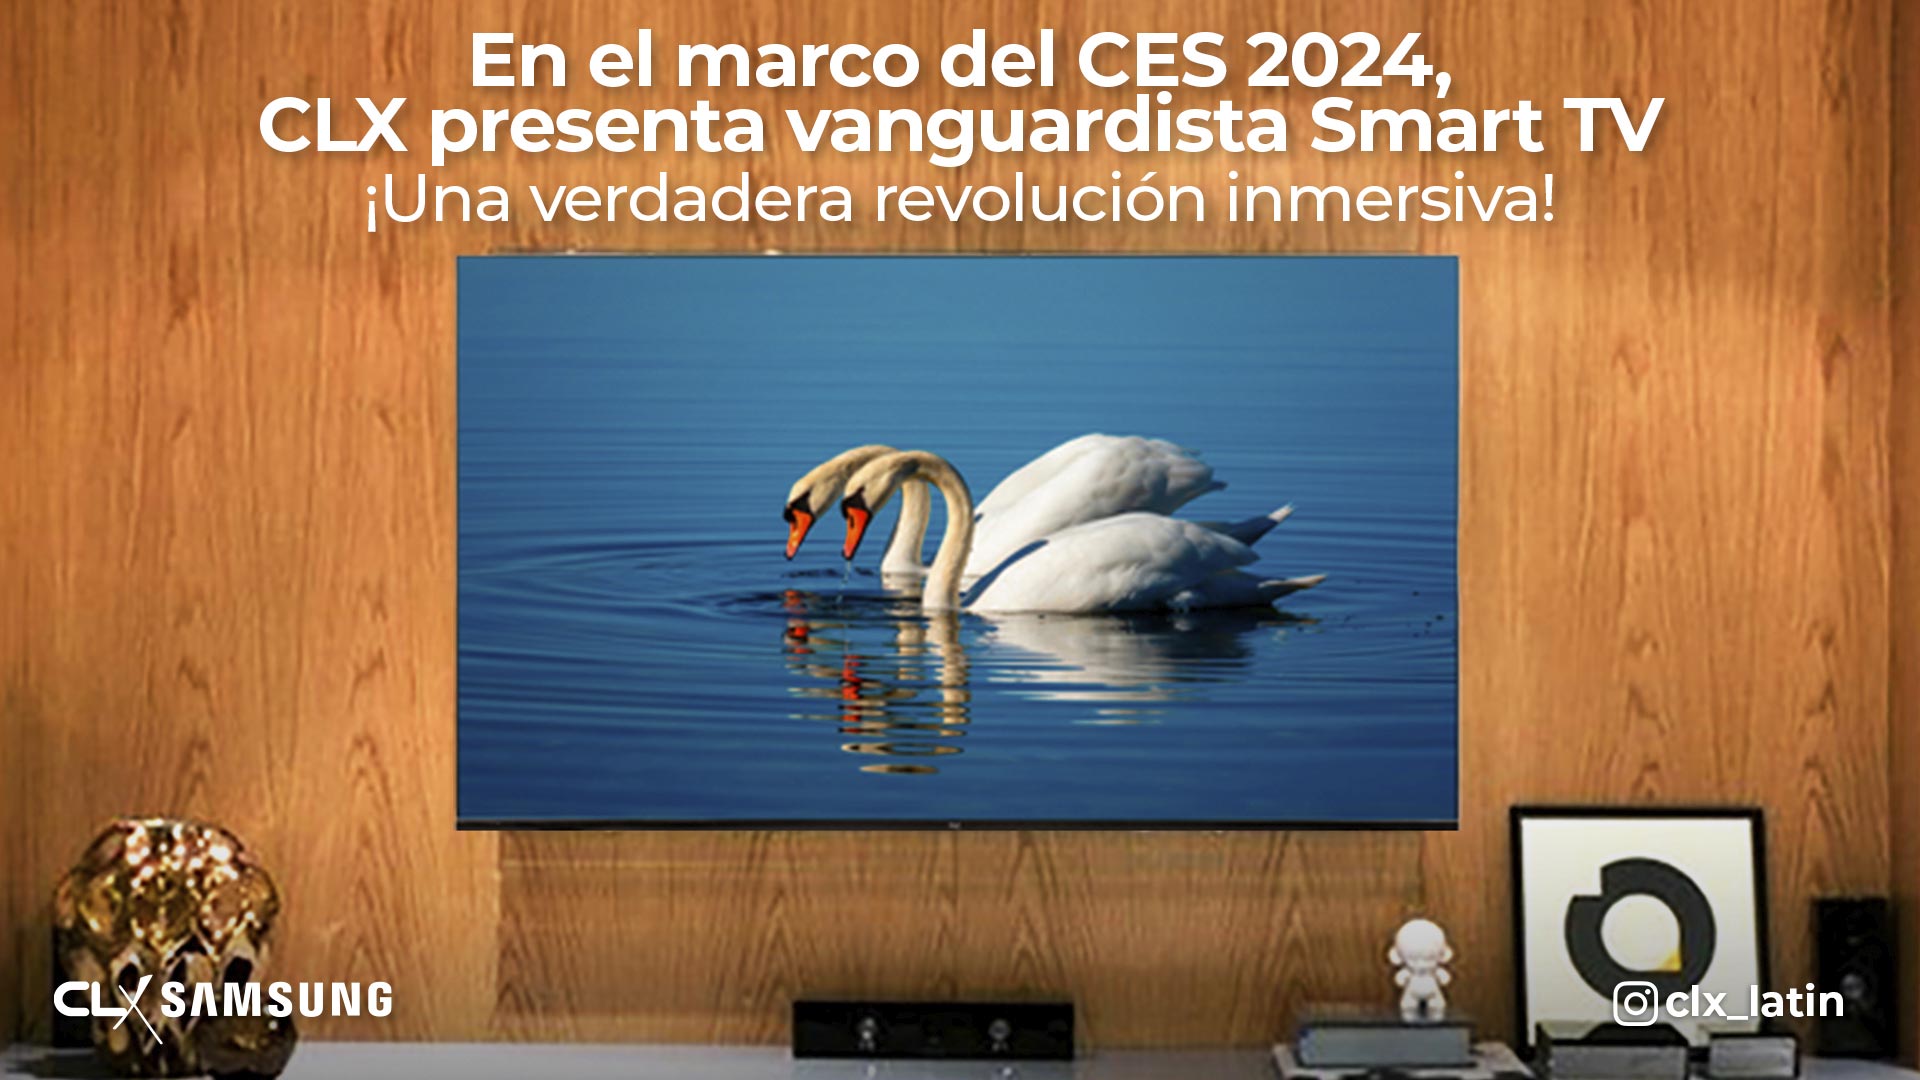 CLX Smart TV CES 2024 - AgenciaCN